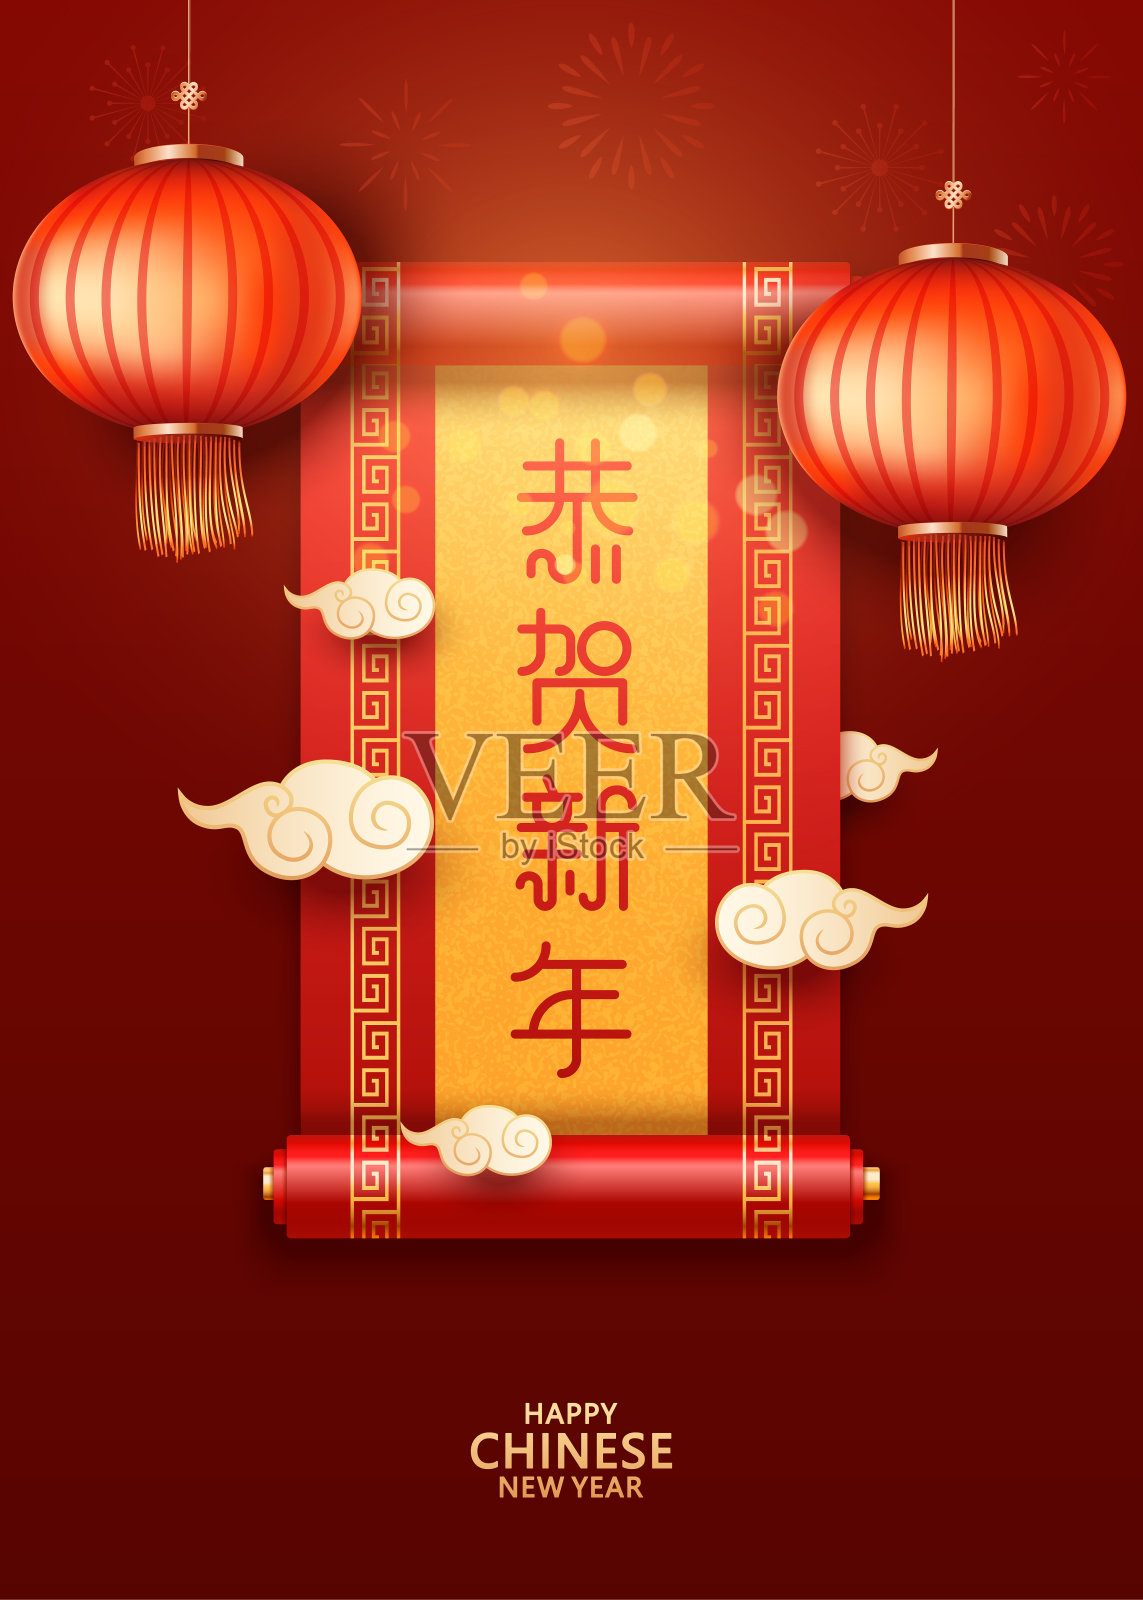 春节快乐矢量卡与中国卷轴(中文翻译:宫和心喜)。云和红灯笼的背景设计模板素材